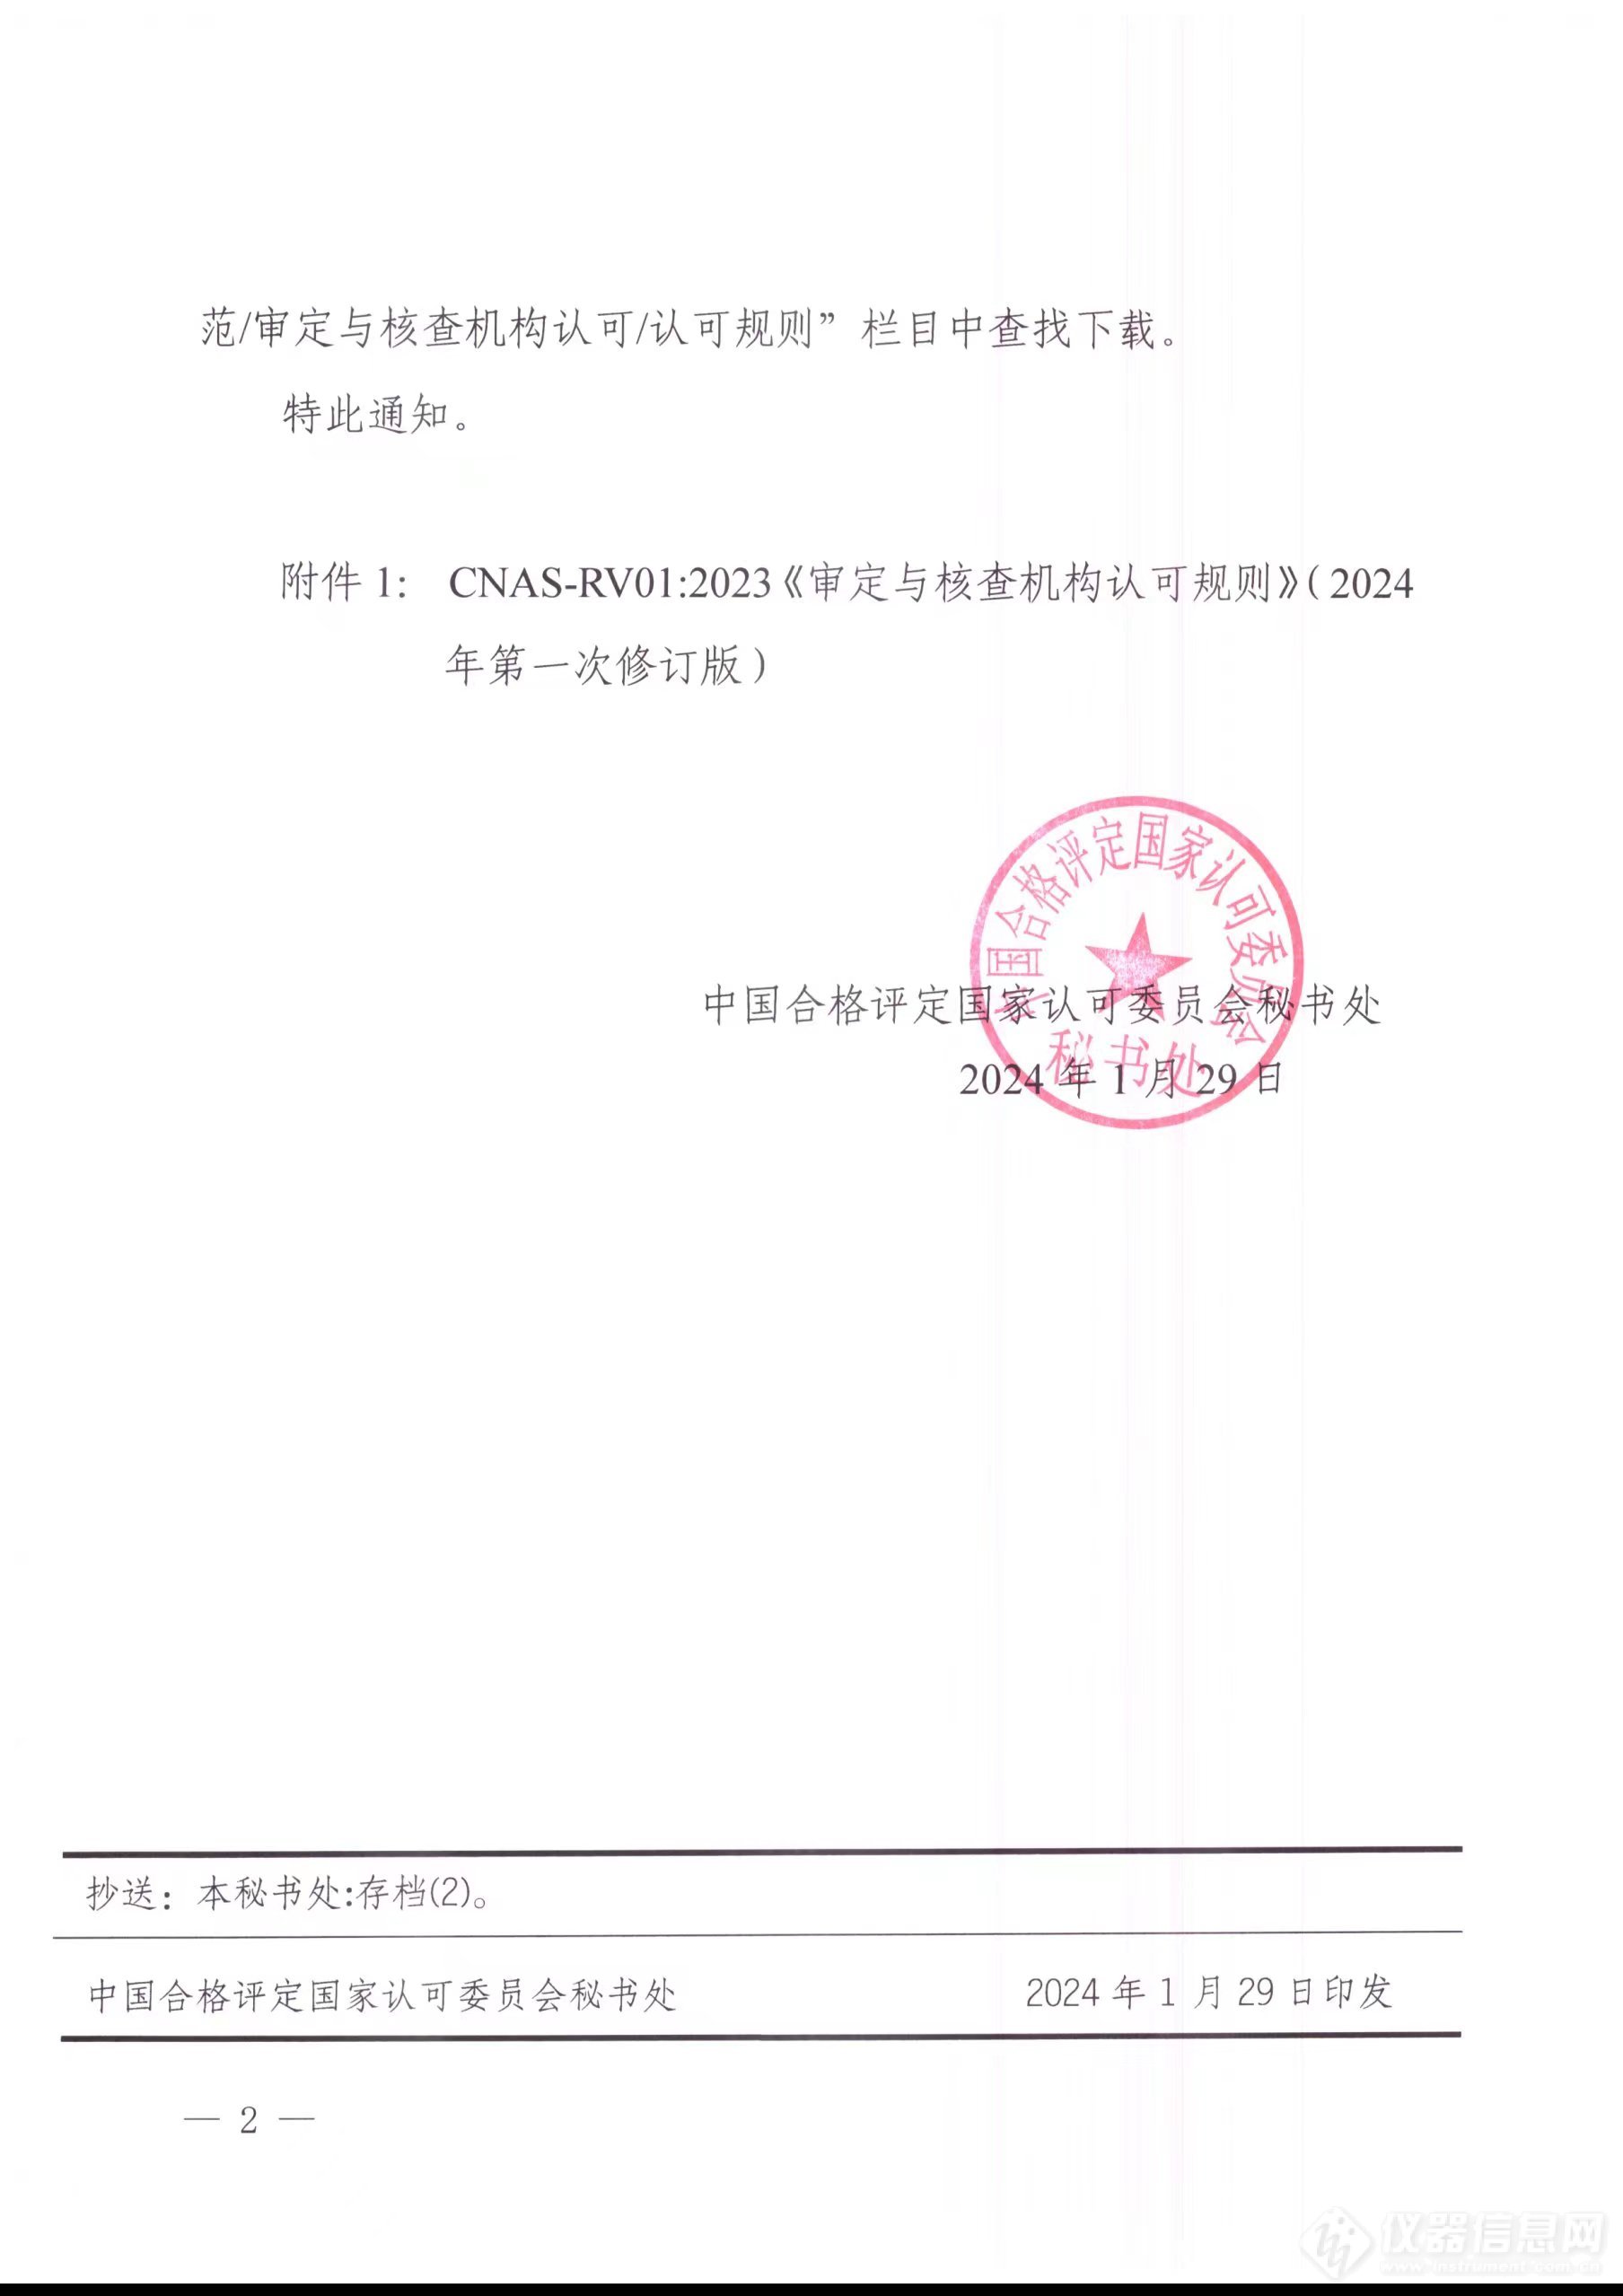 中国合格评定国家认可委员会关于修订发布CNAS-RV01：2023《审定与核查规则》（2024年第一次修订版）的通知